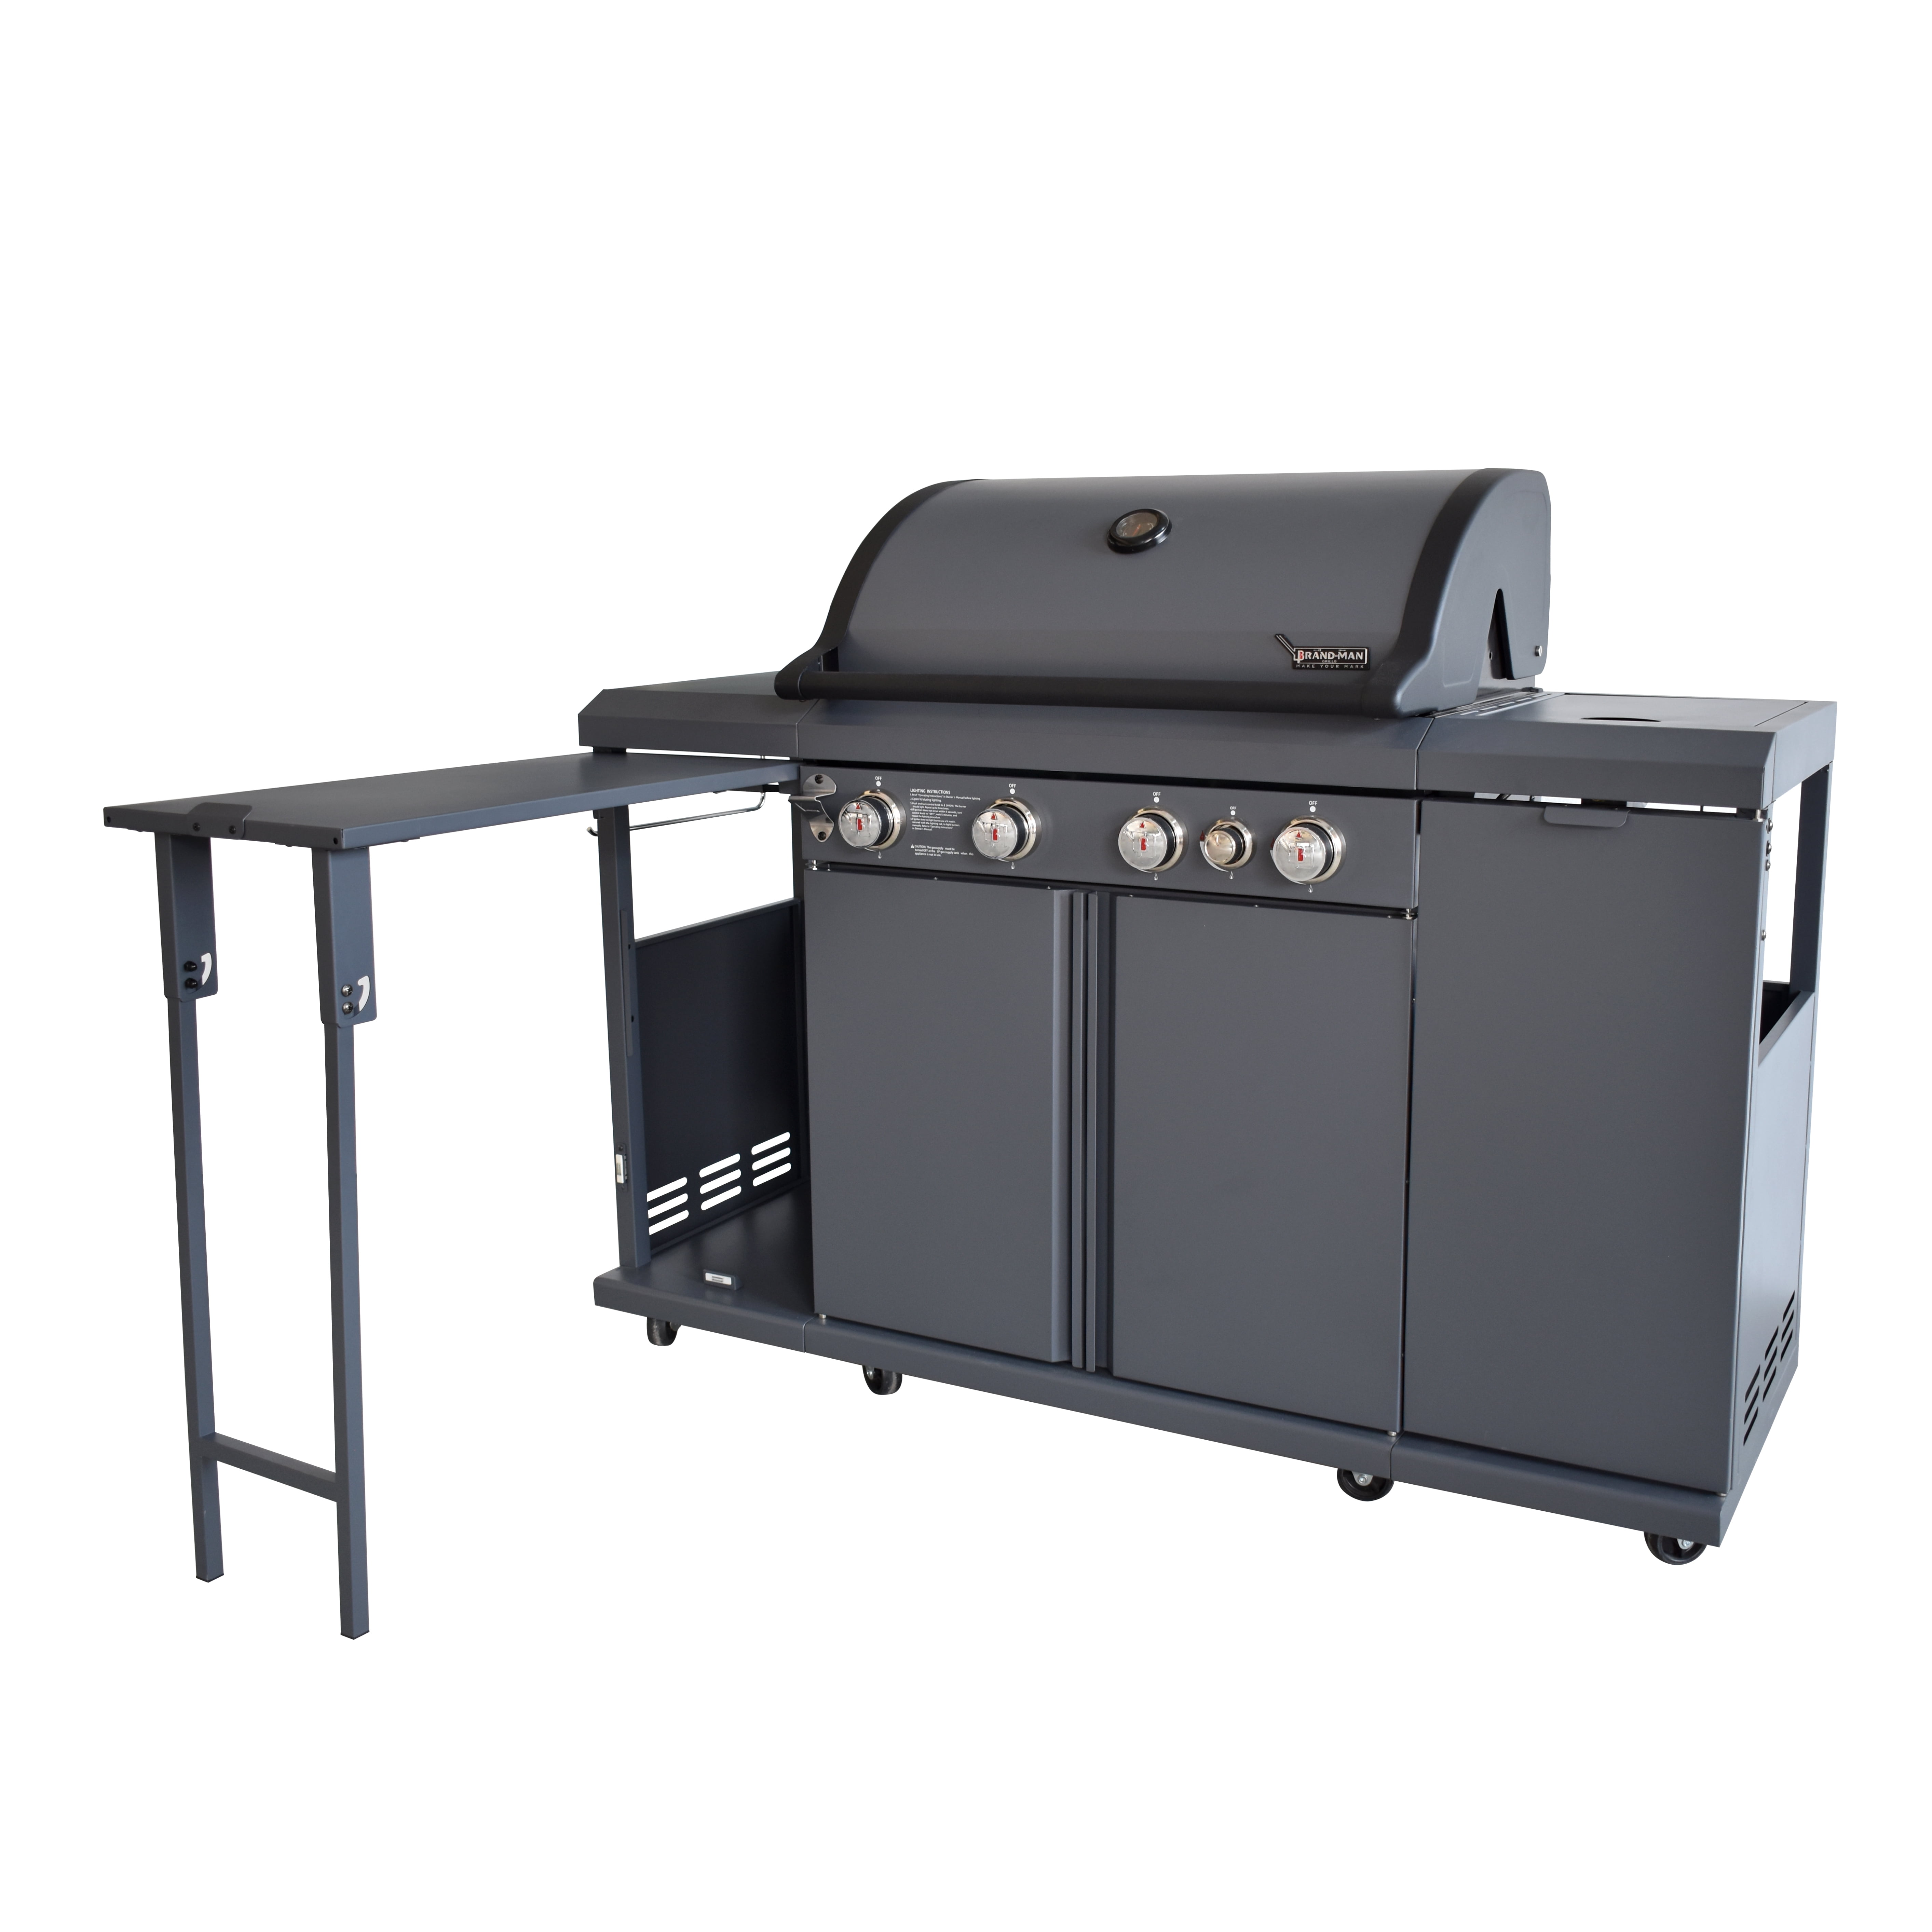 GRILLSKÄR Outdoor kitchen, gas grill/side burner/stainless steel